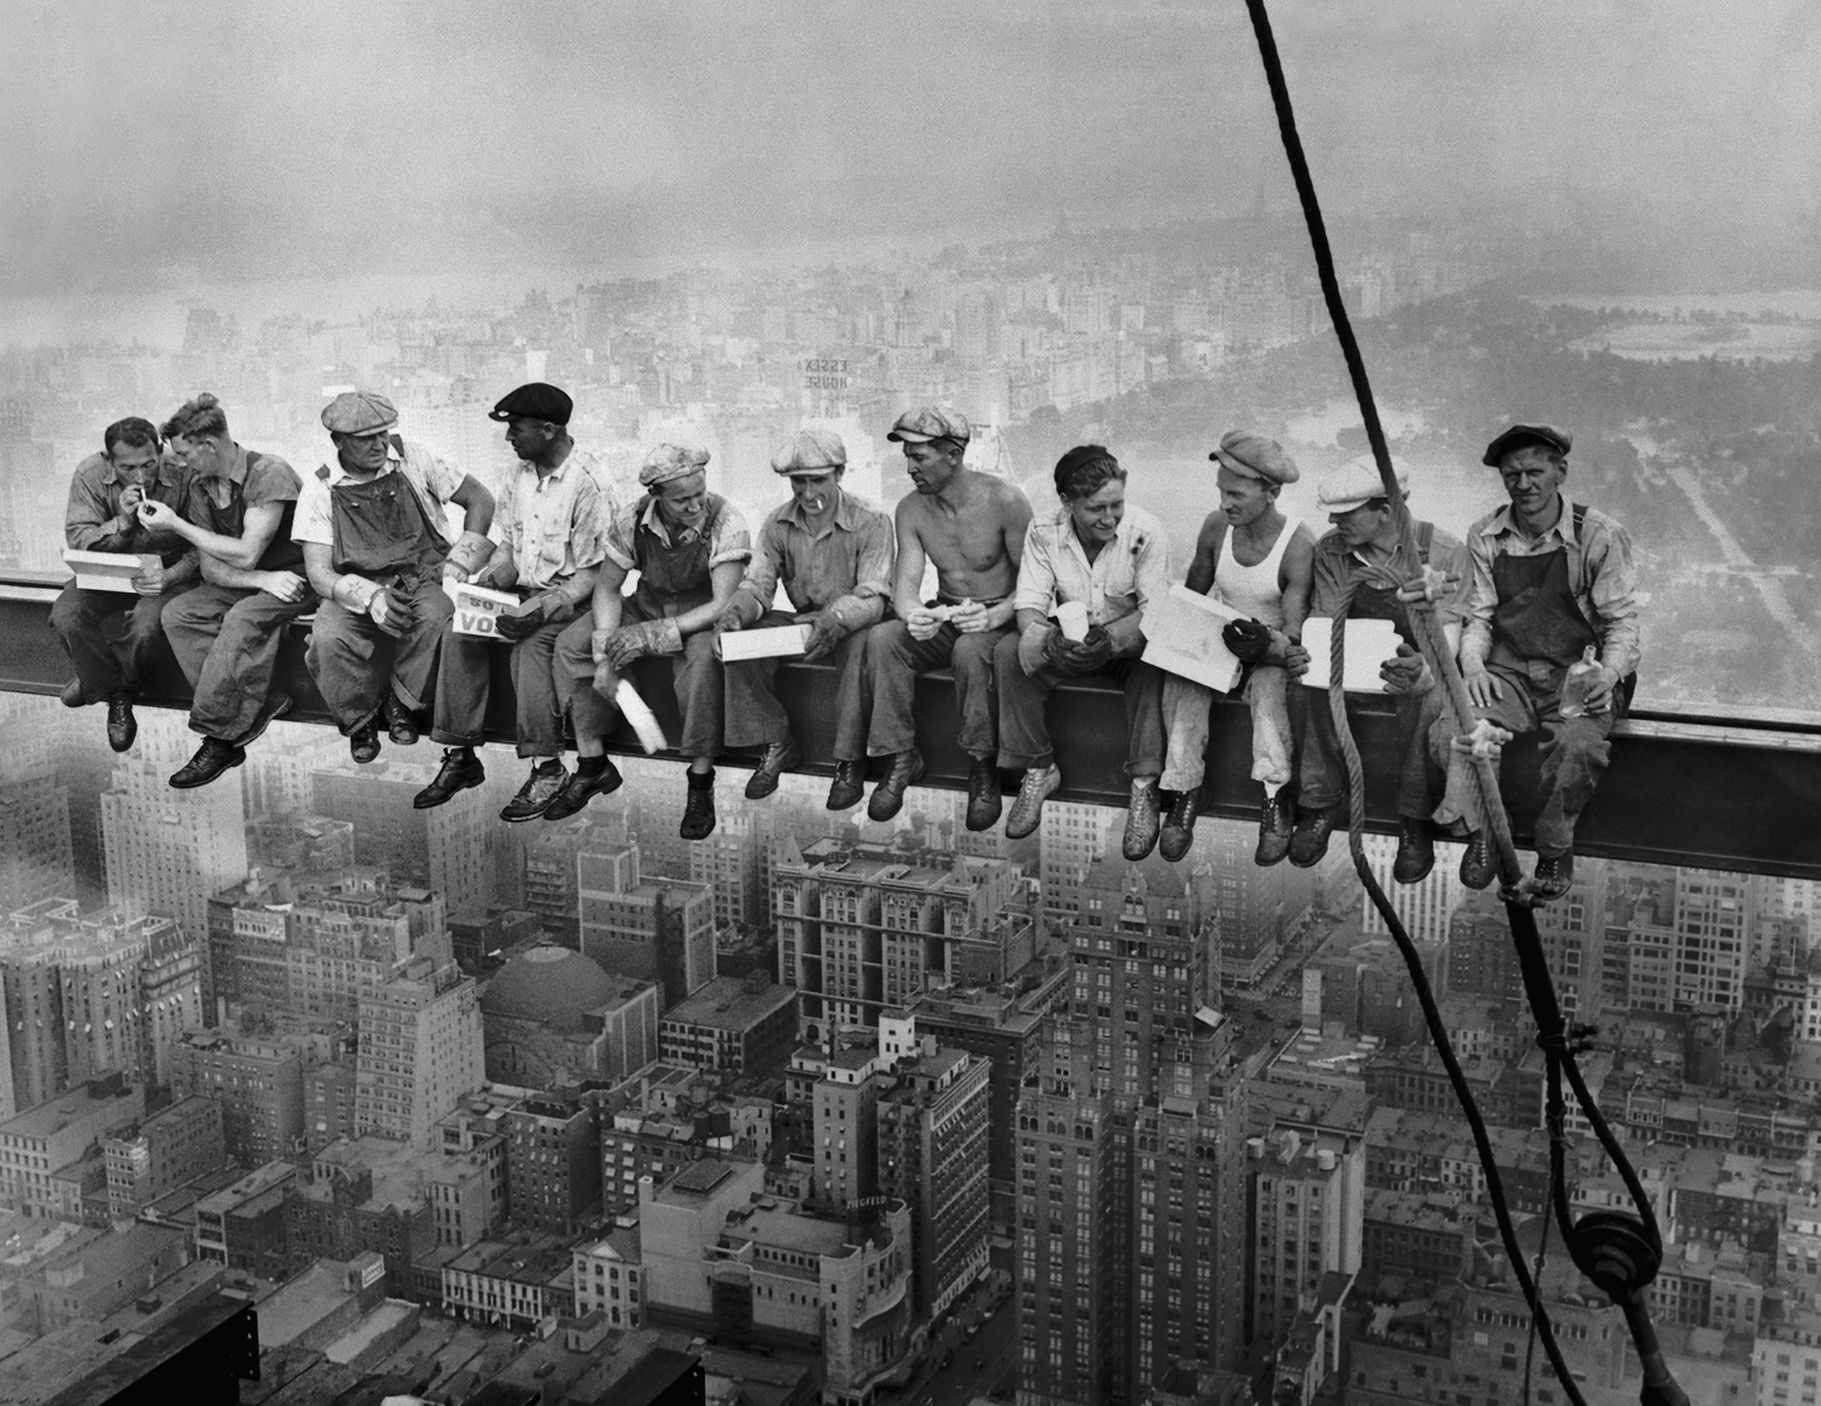 Le secret de l’image iconique.  La célèbre photo d’ouvriers dans un gratte-ciel a été mise en scène par un photographe